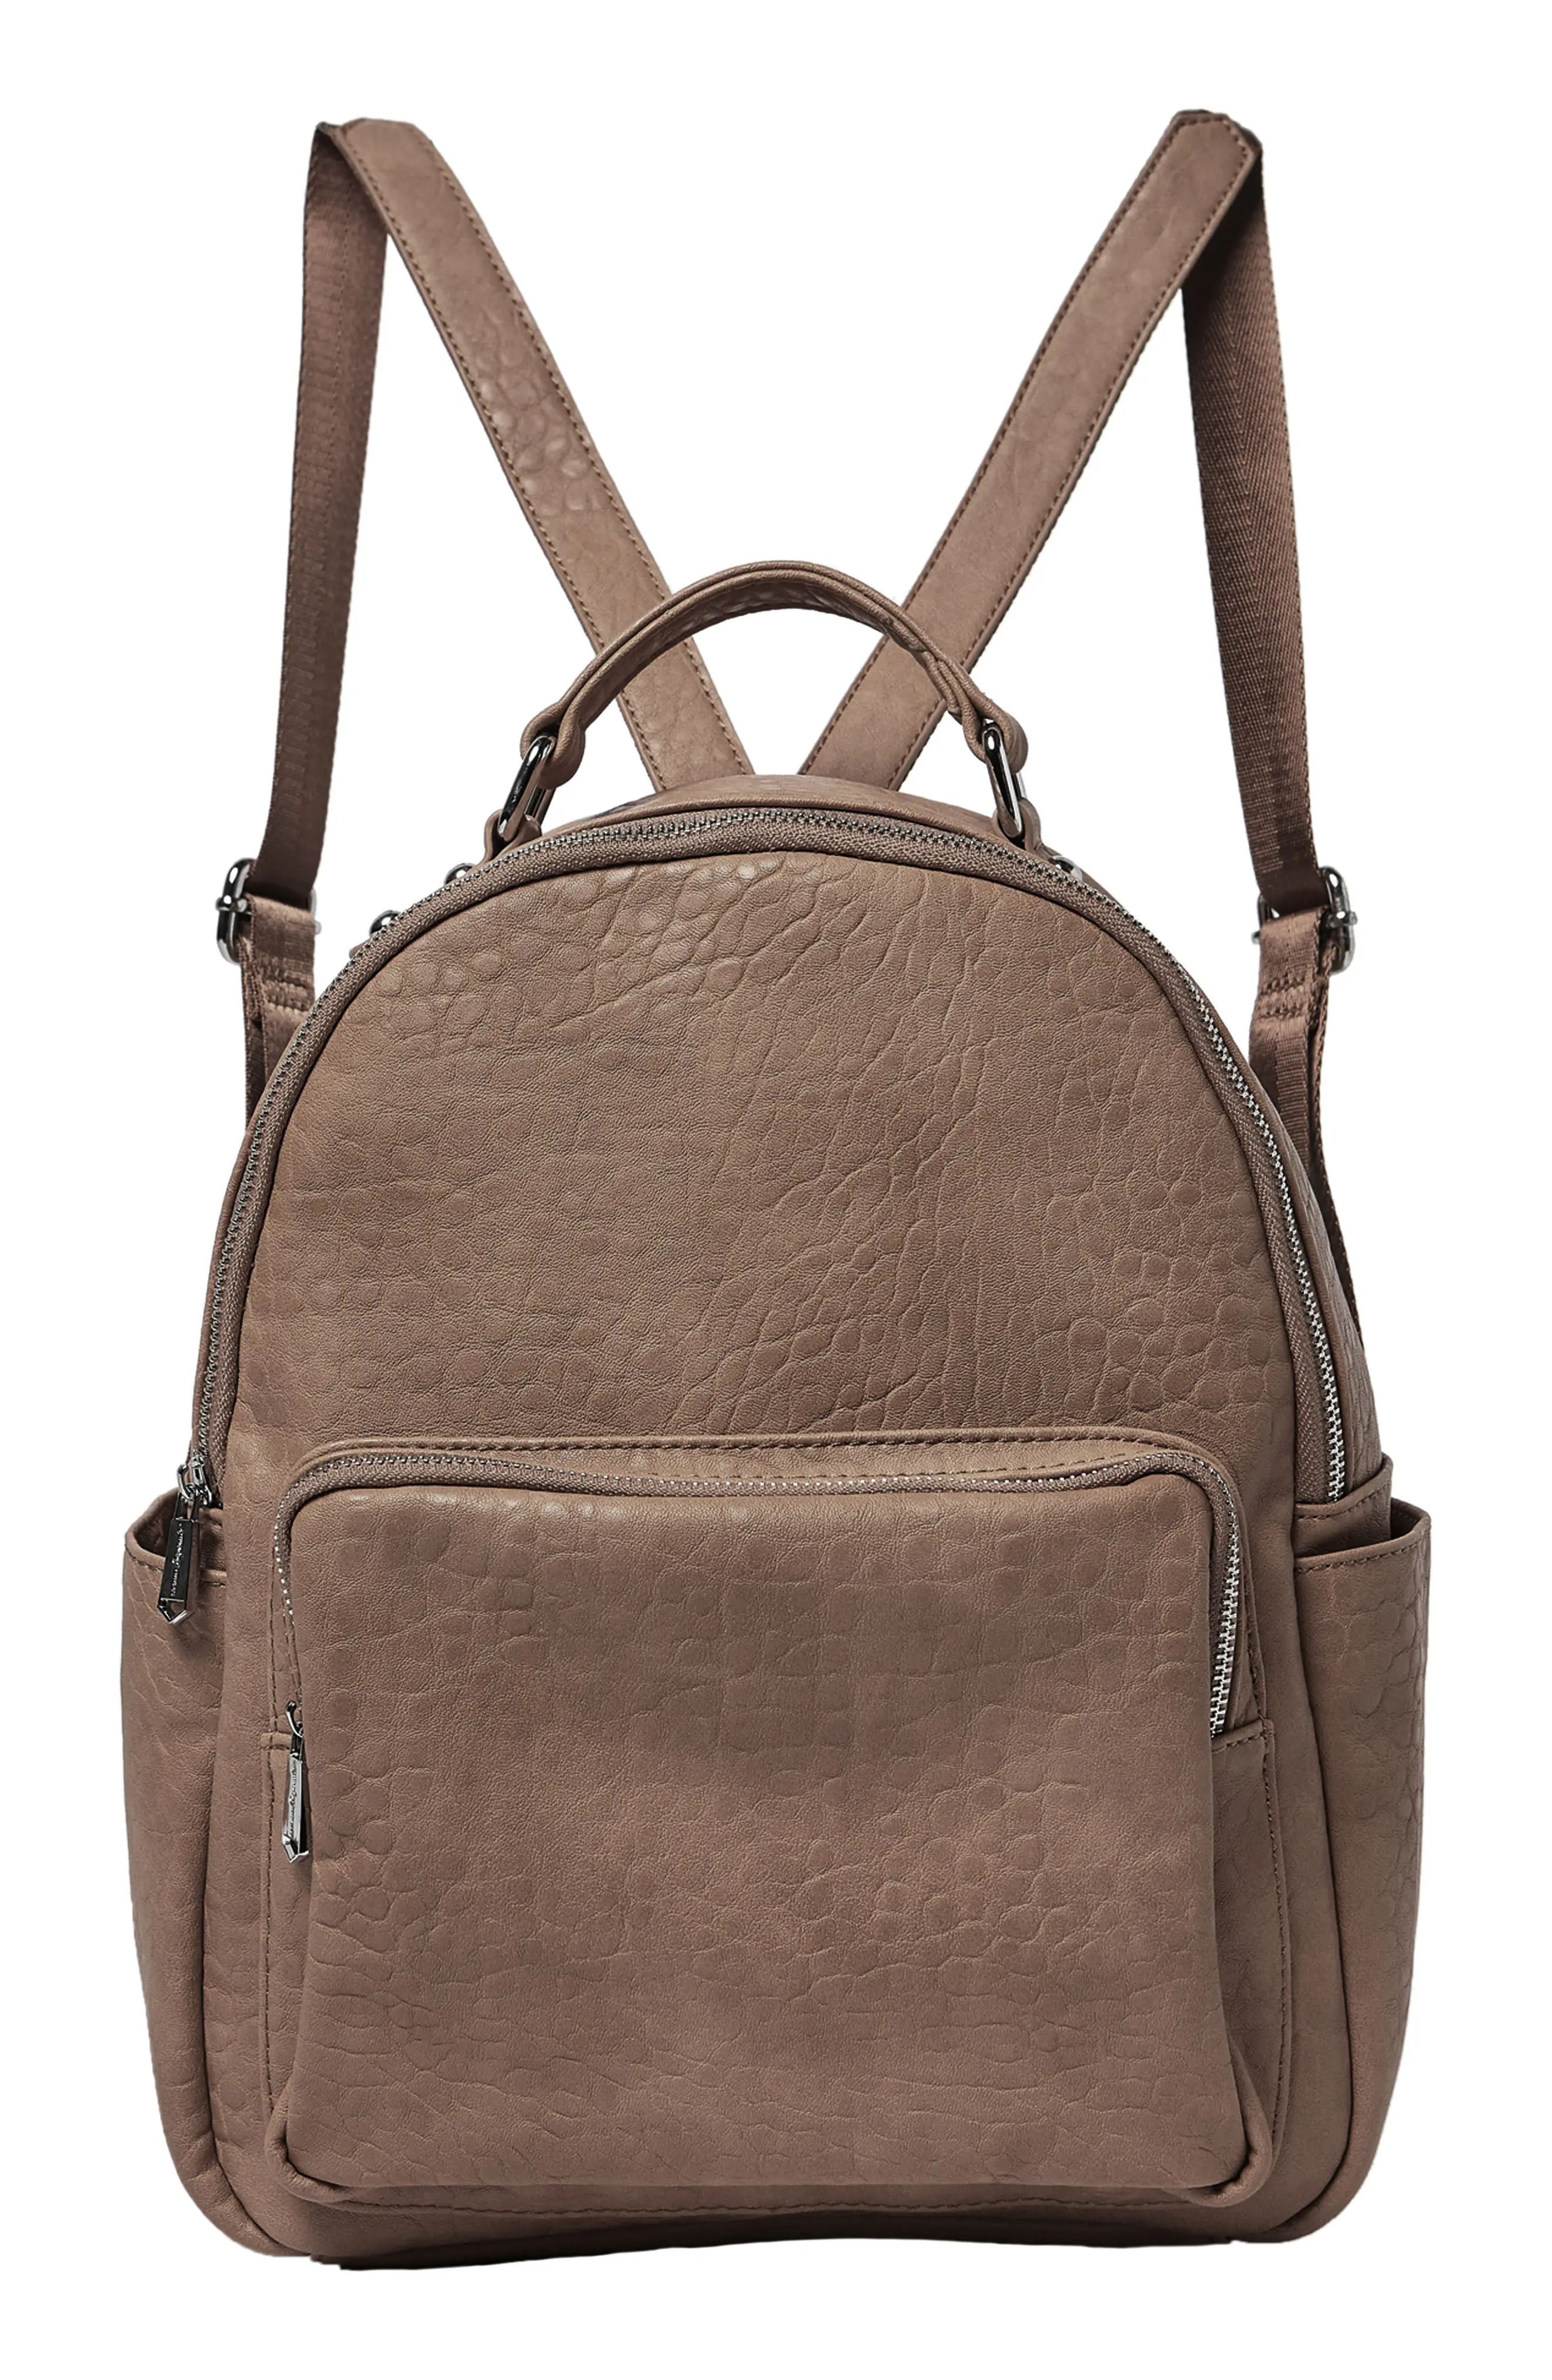 Urban Originals South Bag Vegan Leather Backpack - Brown | Nordstrom